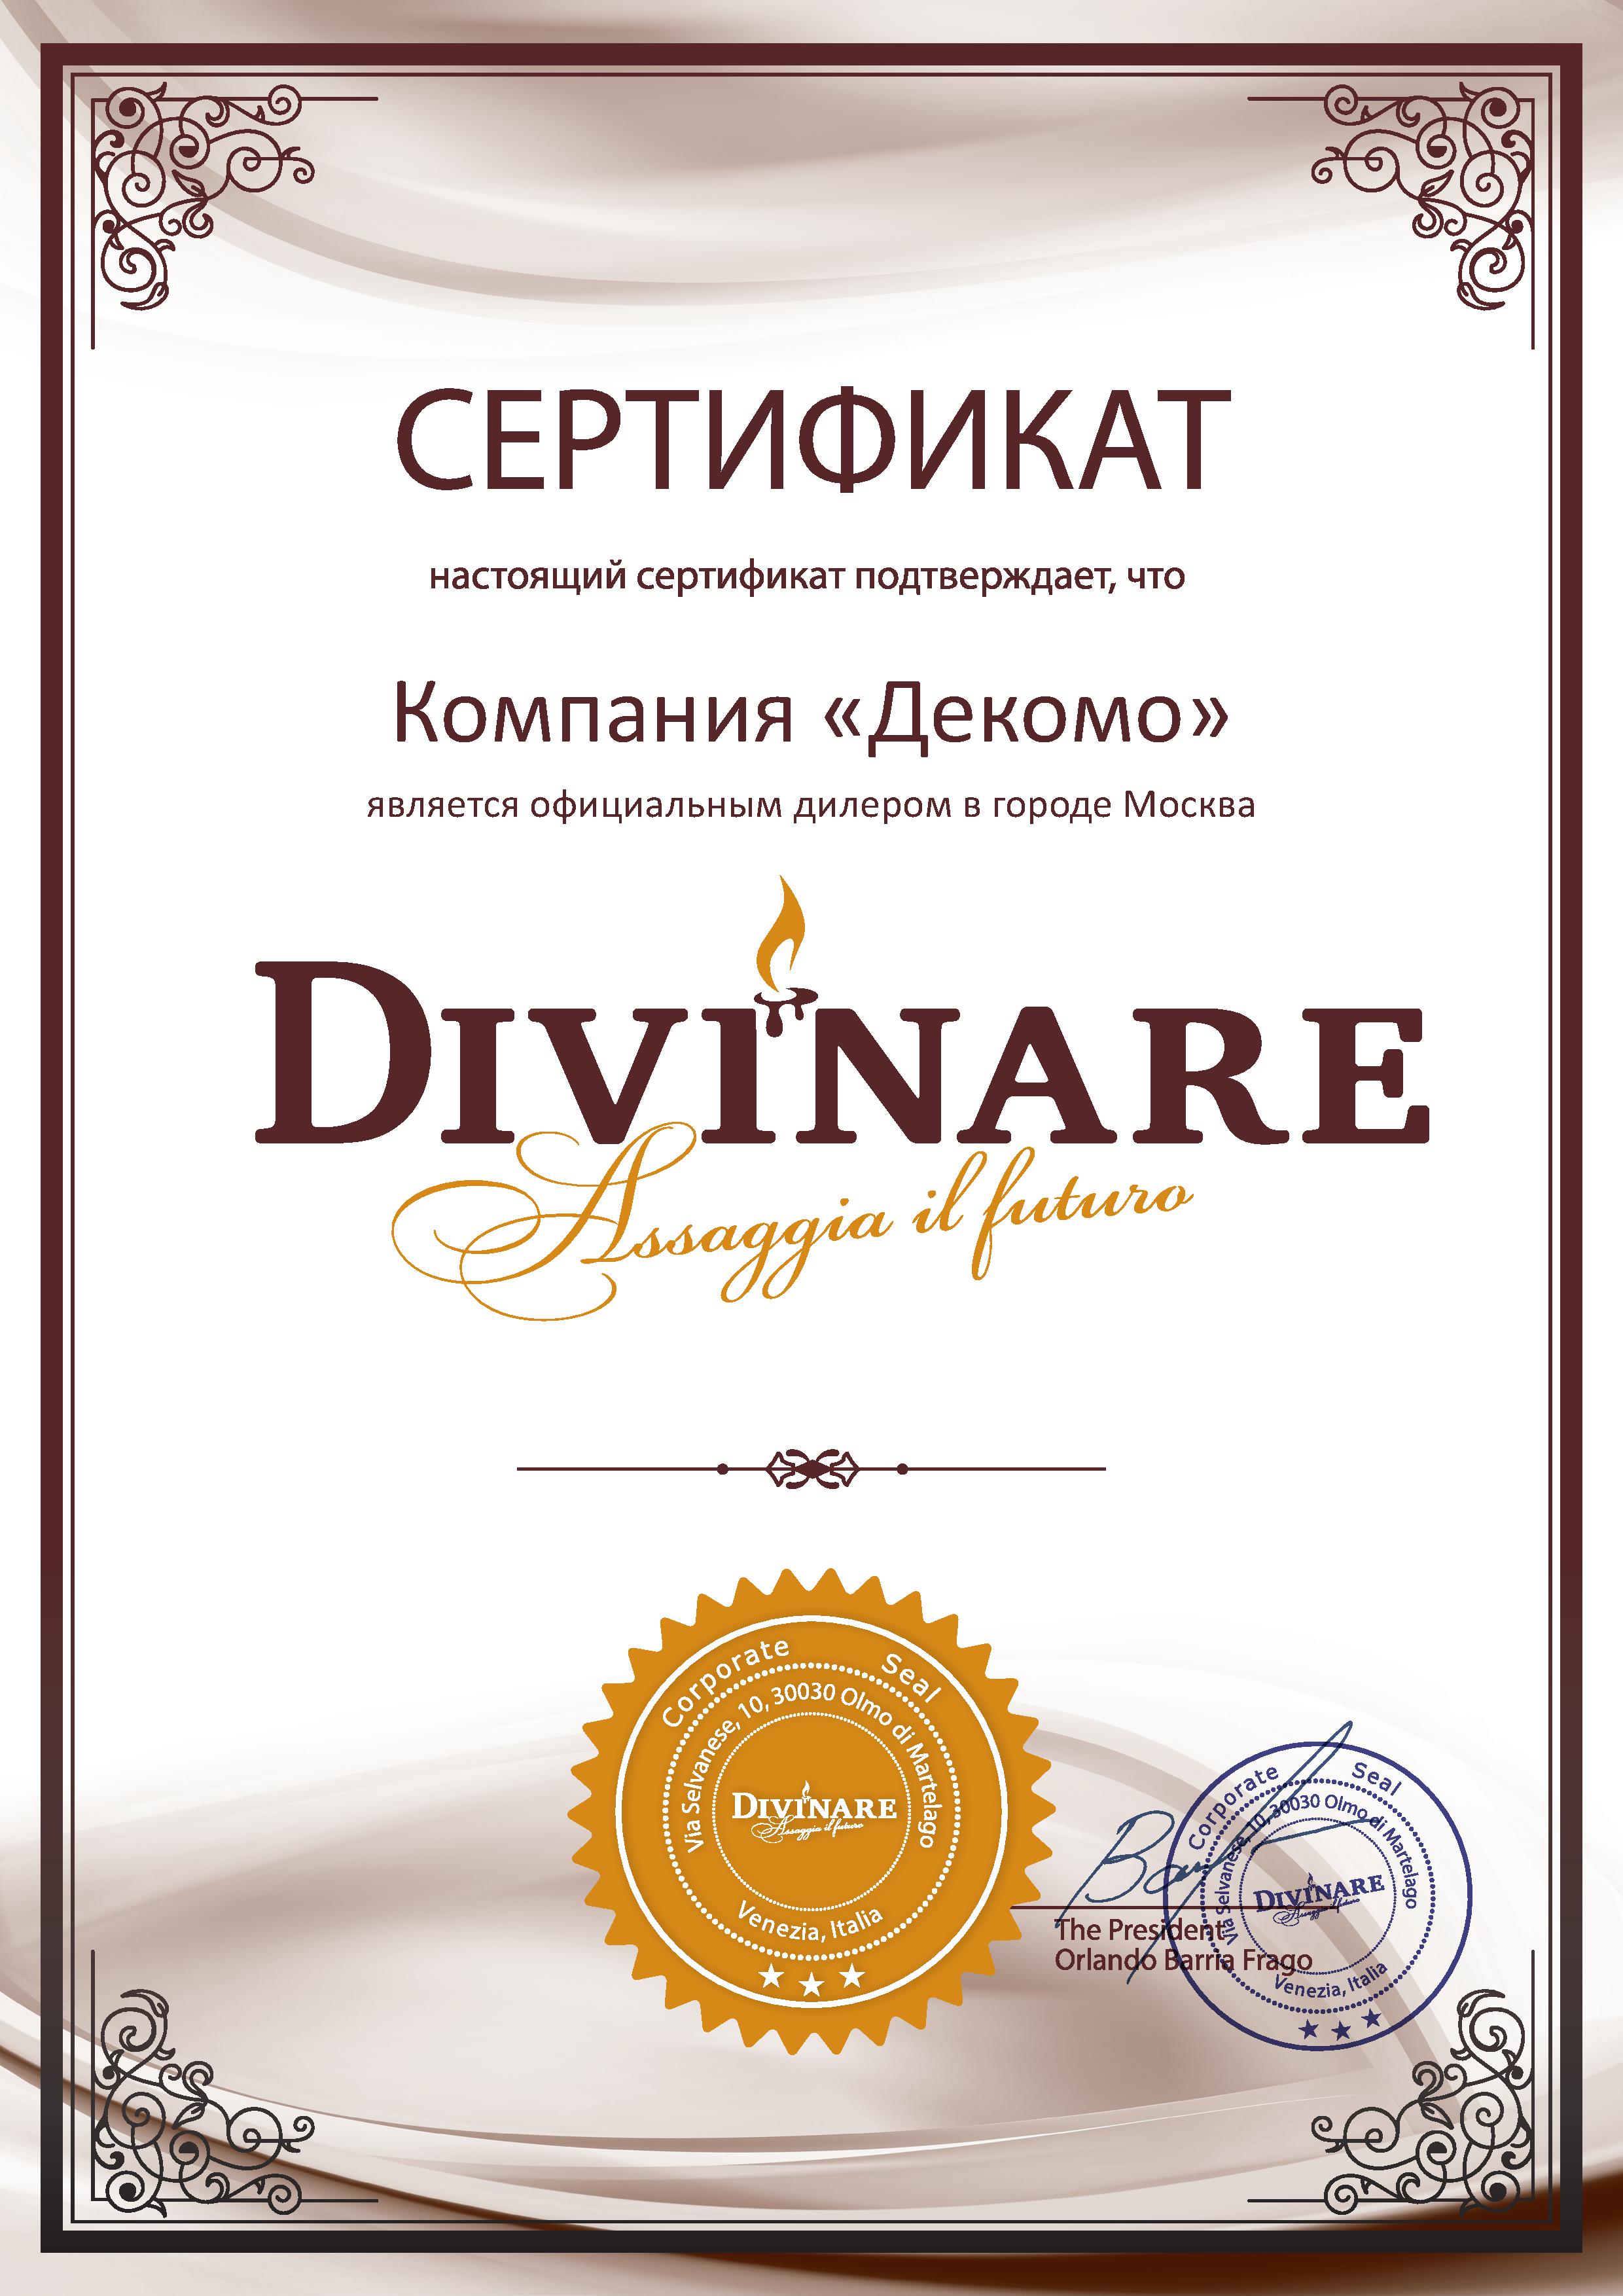 Сертификат Divinare